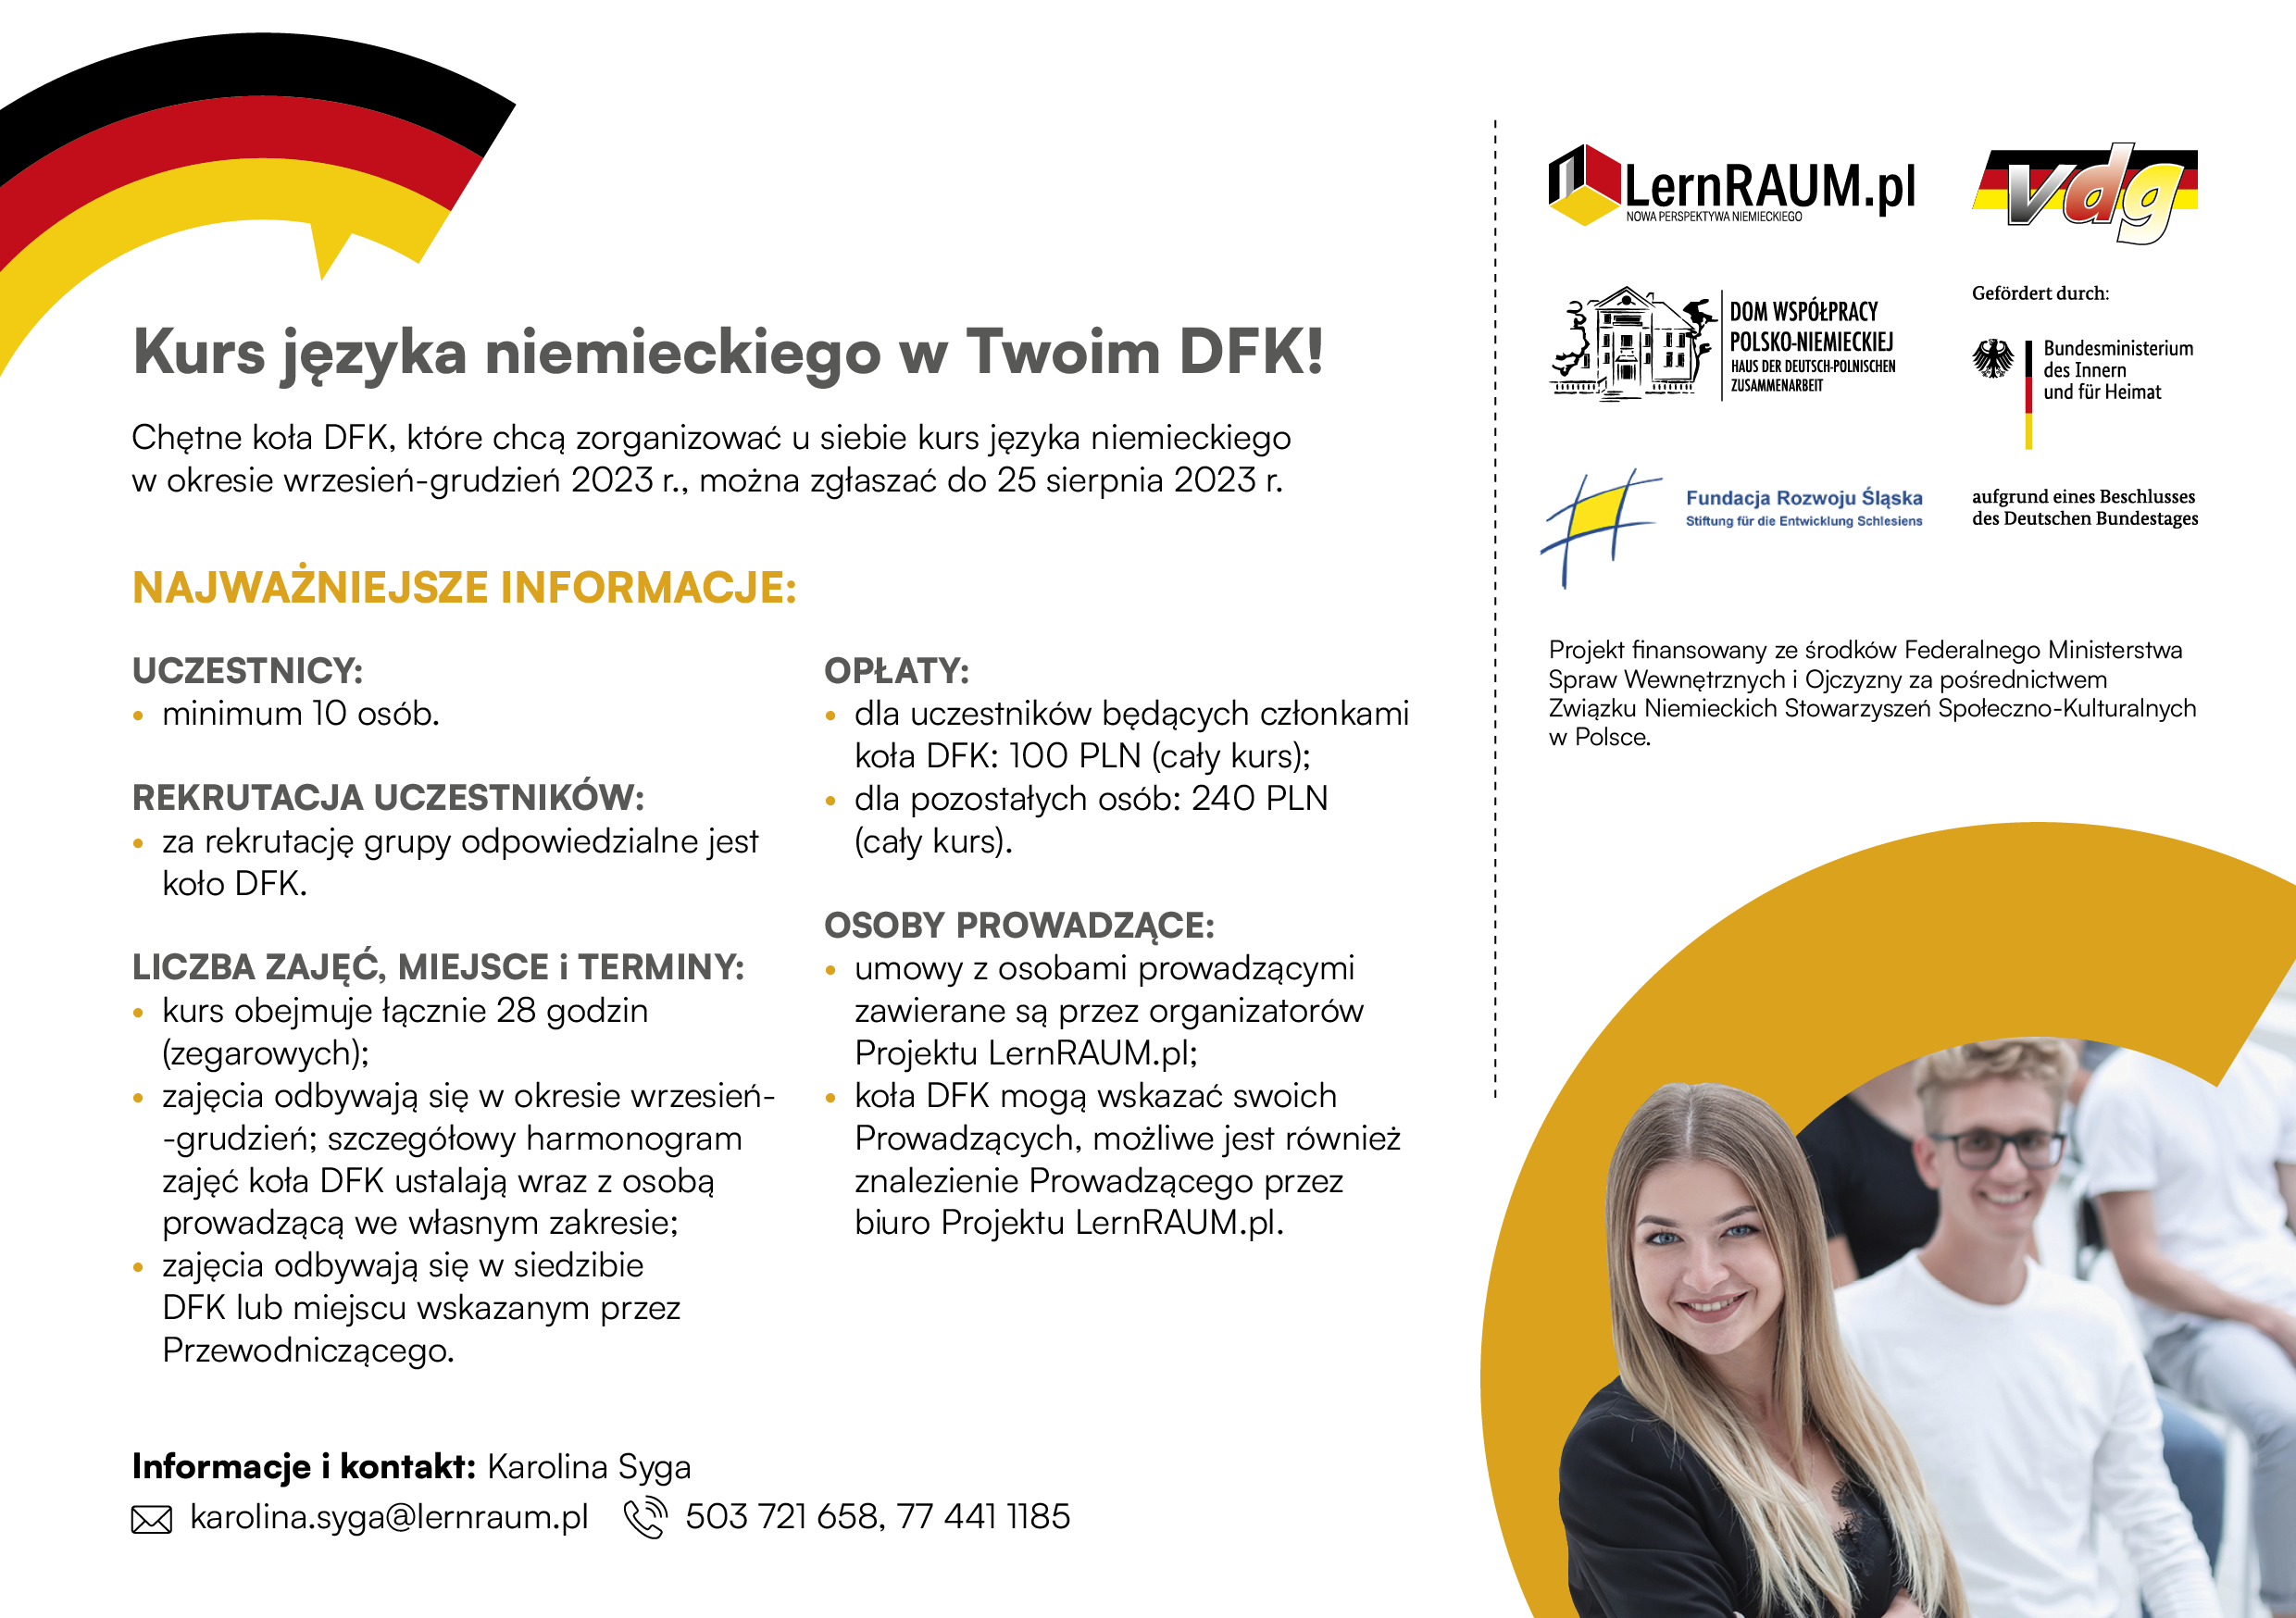 Zorganizuj kurs niemieckiego w swoim DFK!